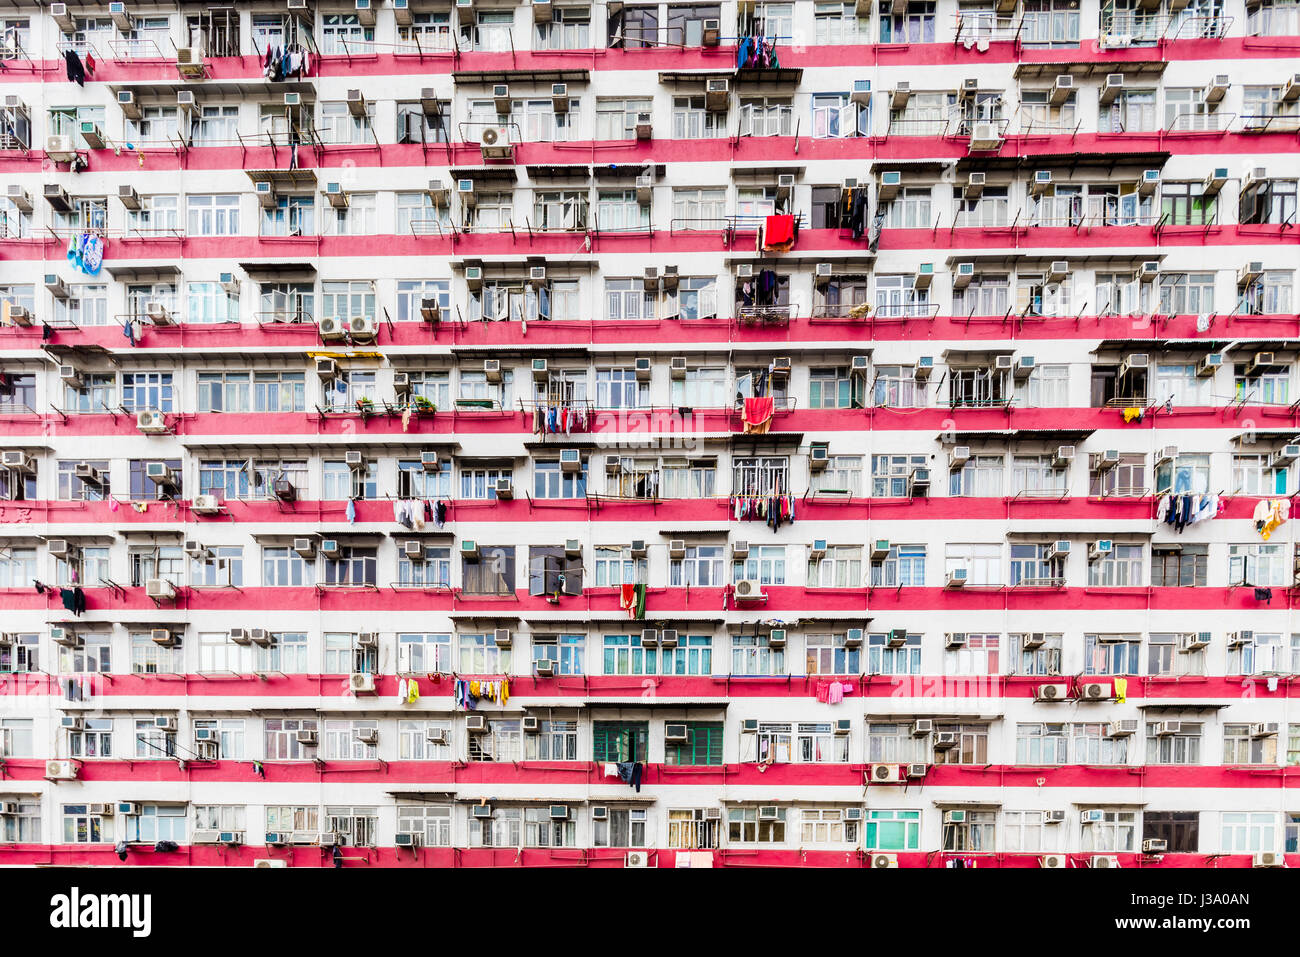 Apartamentos de estilo tradicional en Hong Kong, los residentes viven en condiciones de hacinamiento. Mong Kok está situado en Kowloon. Foto de stock